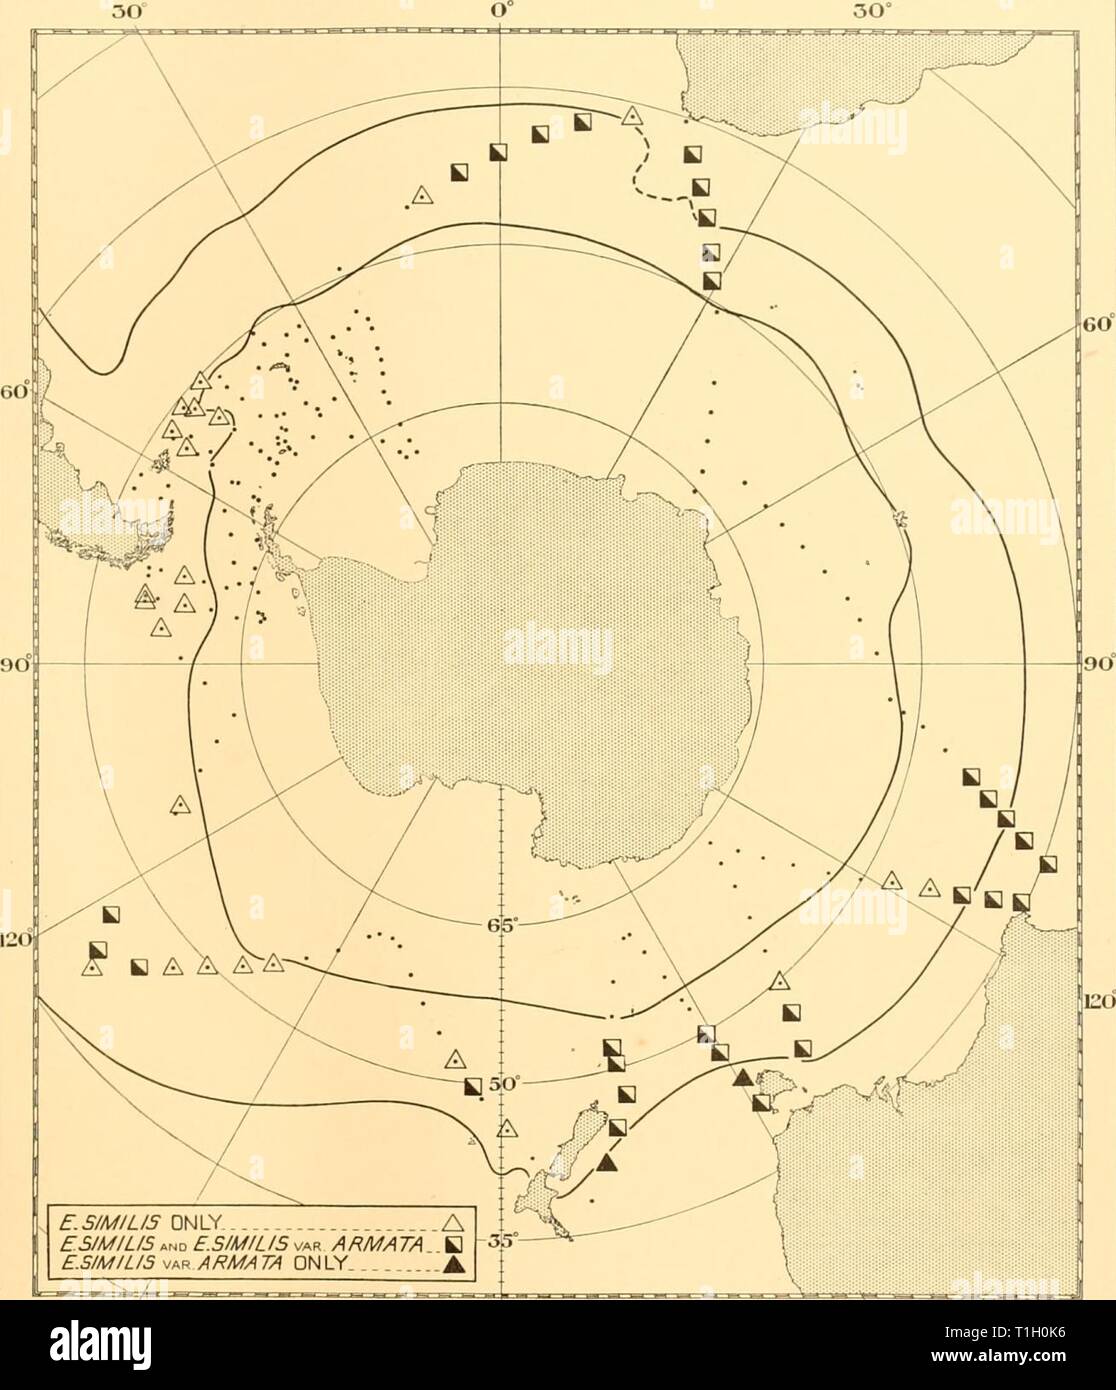 Rapports de découverte (1937) rapports de découverte discoveryreports14inst Année : 1937 Je lis 235 SIM EUPHAUSIA F.S/M/L/S Dhiiy ESIMILIS UN ET F.SIMILIS var ARMATA B F.P/M/G/S -jR ARMATA SEULEMENT  150 West 180°East 150° Fig. 26. Tableau montrant la présence de E. similis et E. similis var. armata aux stations des enquêtes des îles Falkland privé dans les étés de 1931-2 et 1932-3, et de l'univers circumpolaire cruises de février à octobre 1932. L'intérieur des deux lignes épaisses représente la convergence Antarctique, l'extérieur la sous- convergence antarctique. 6-2 Banque D'Images